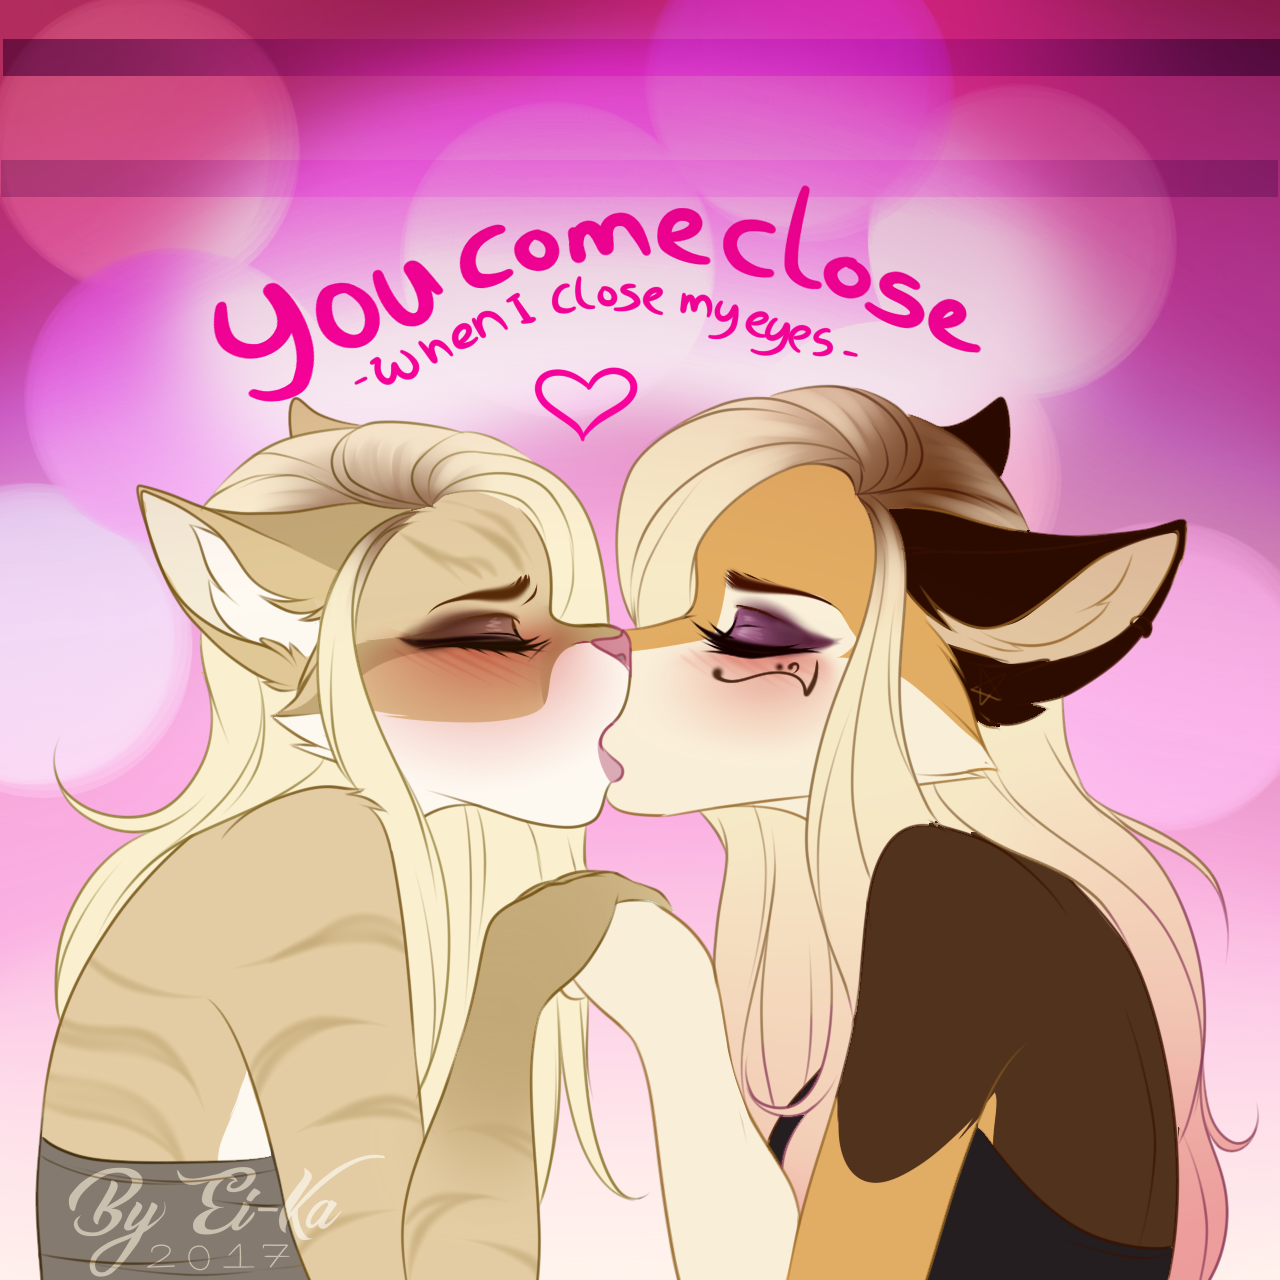 Furry lesbian kiss